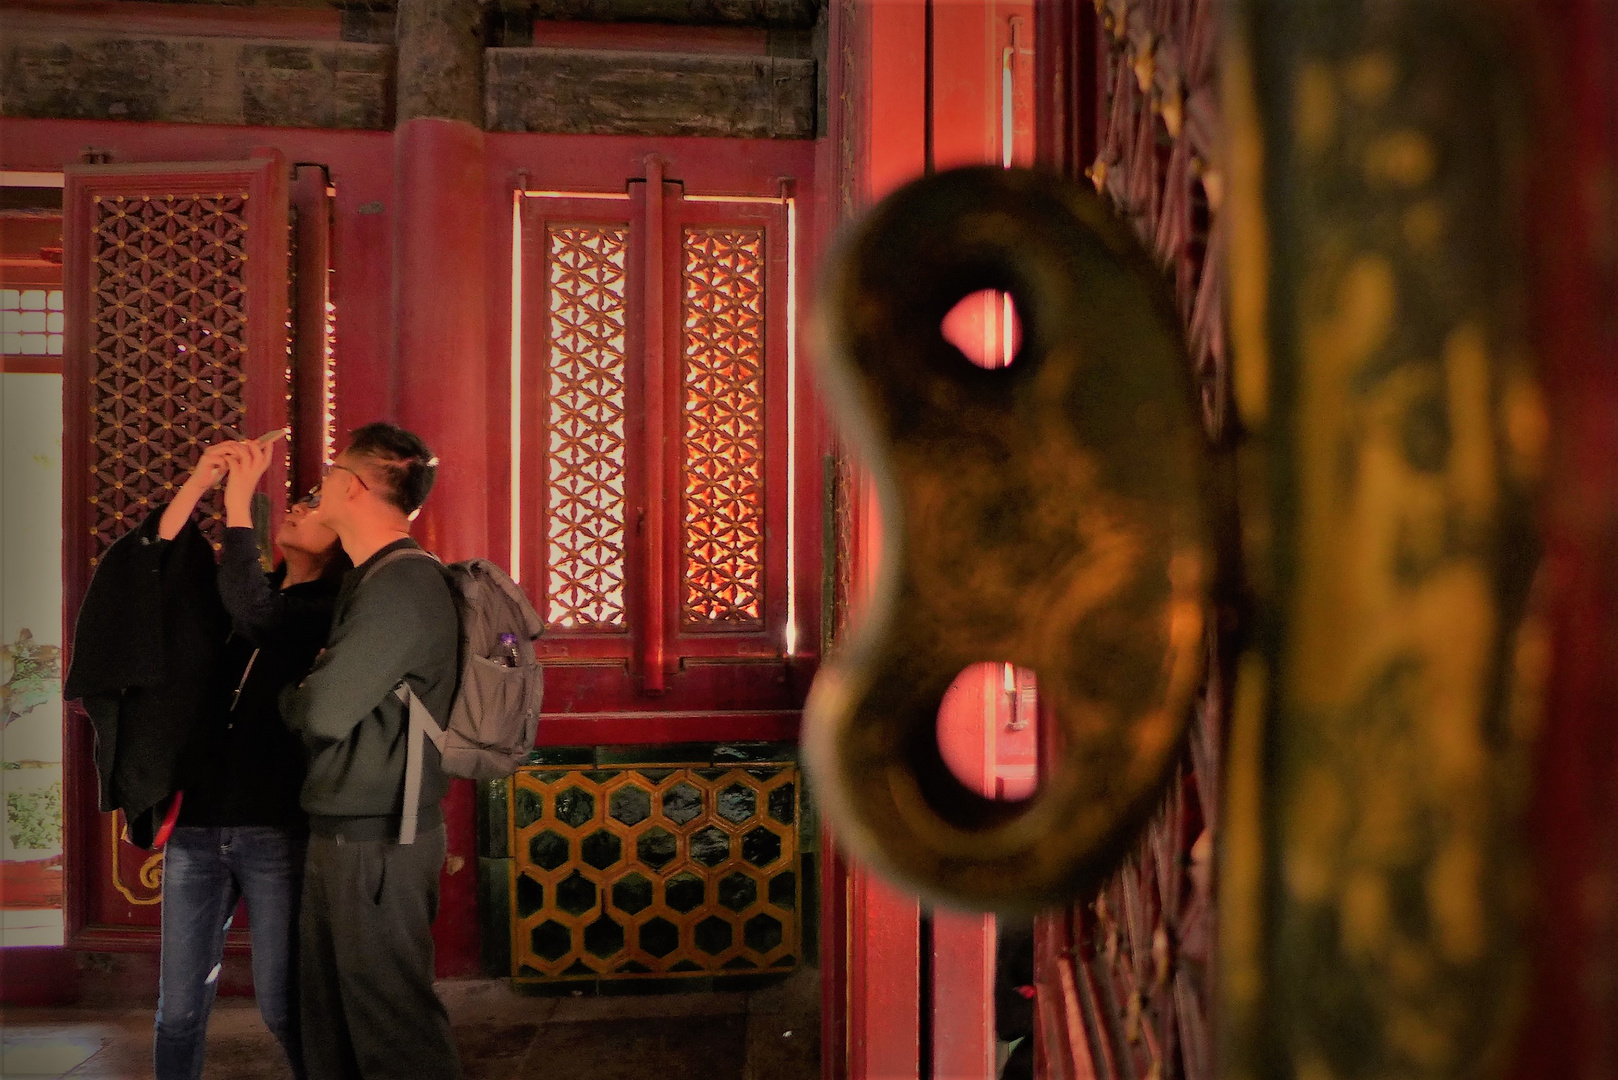 Inside Forbidden City